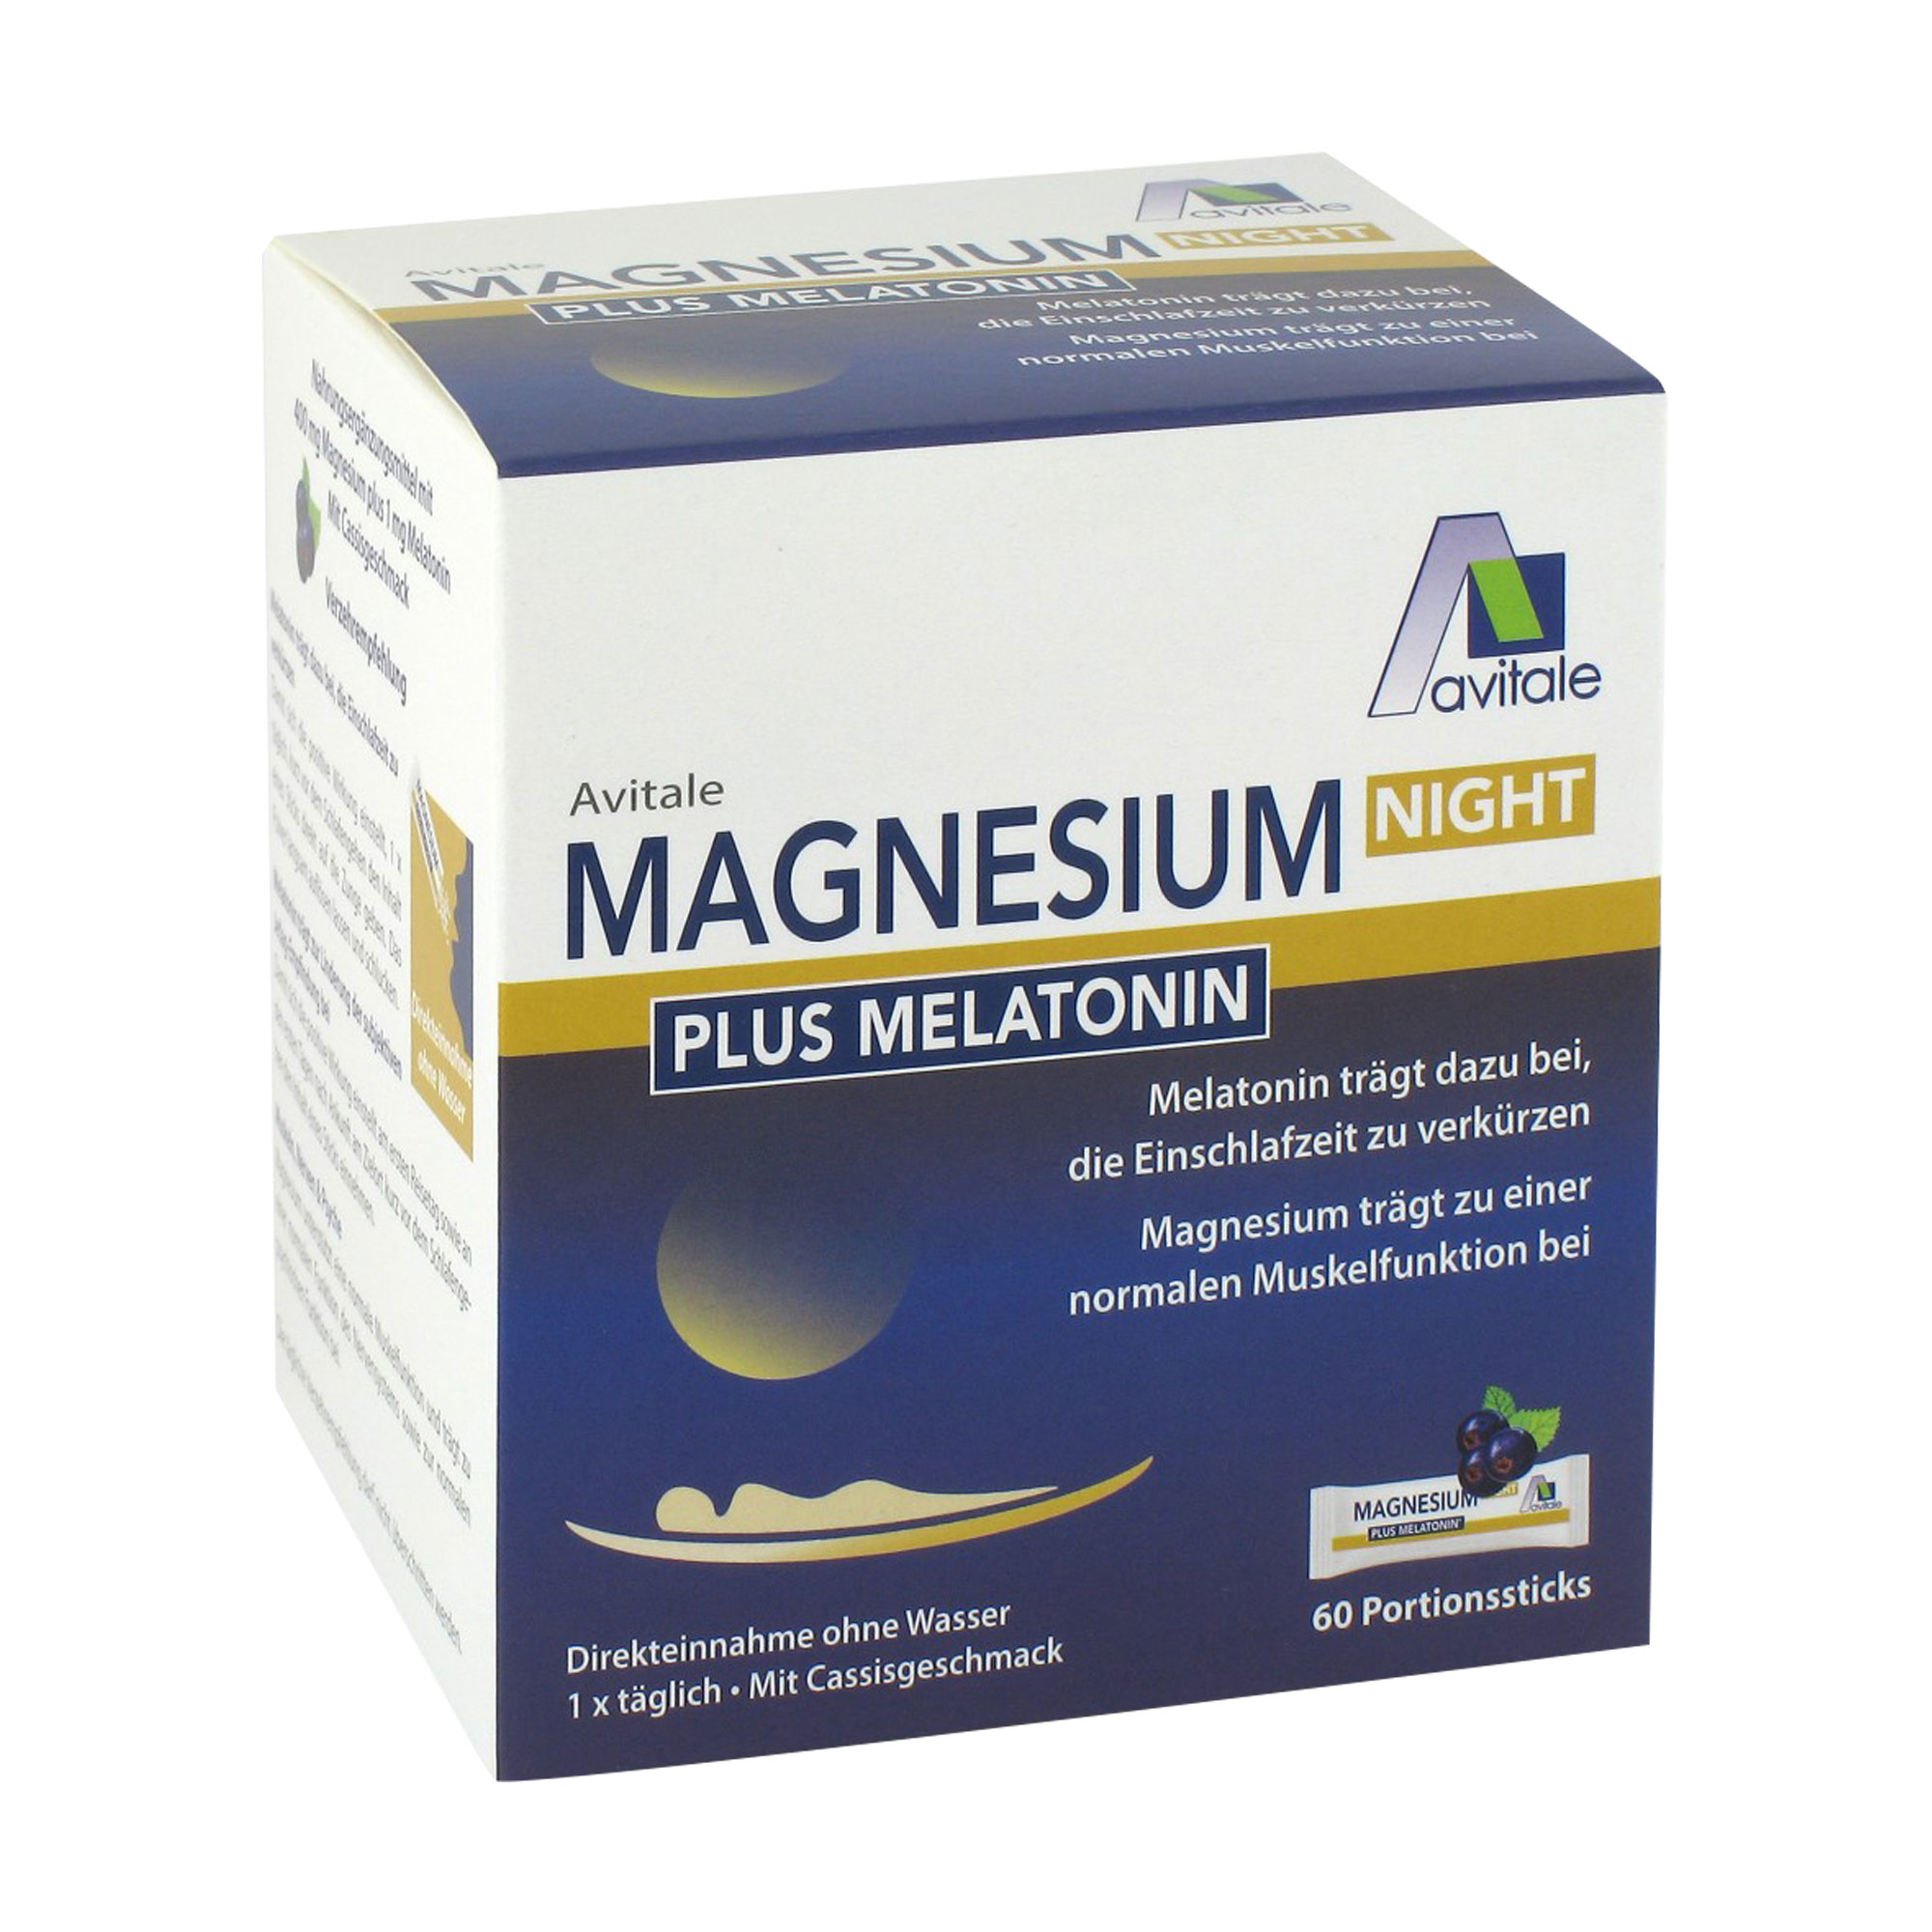 Nahrungsergänzungsmittel mit 400 mg Magnesium und Melatonin. Mit Cassis-Geschmack.